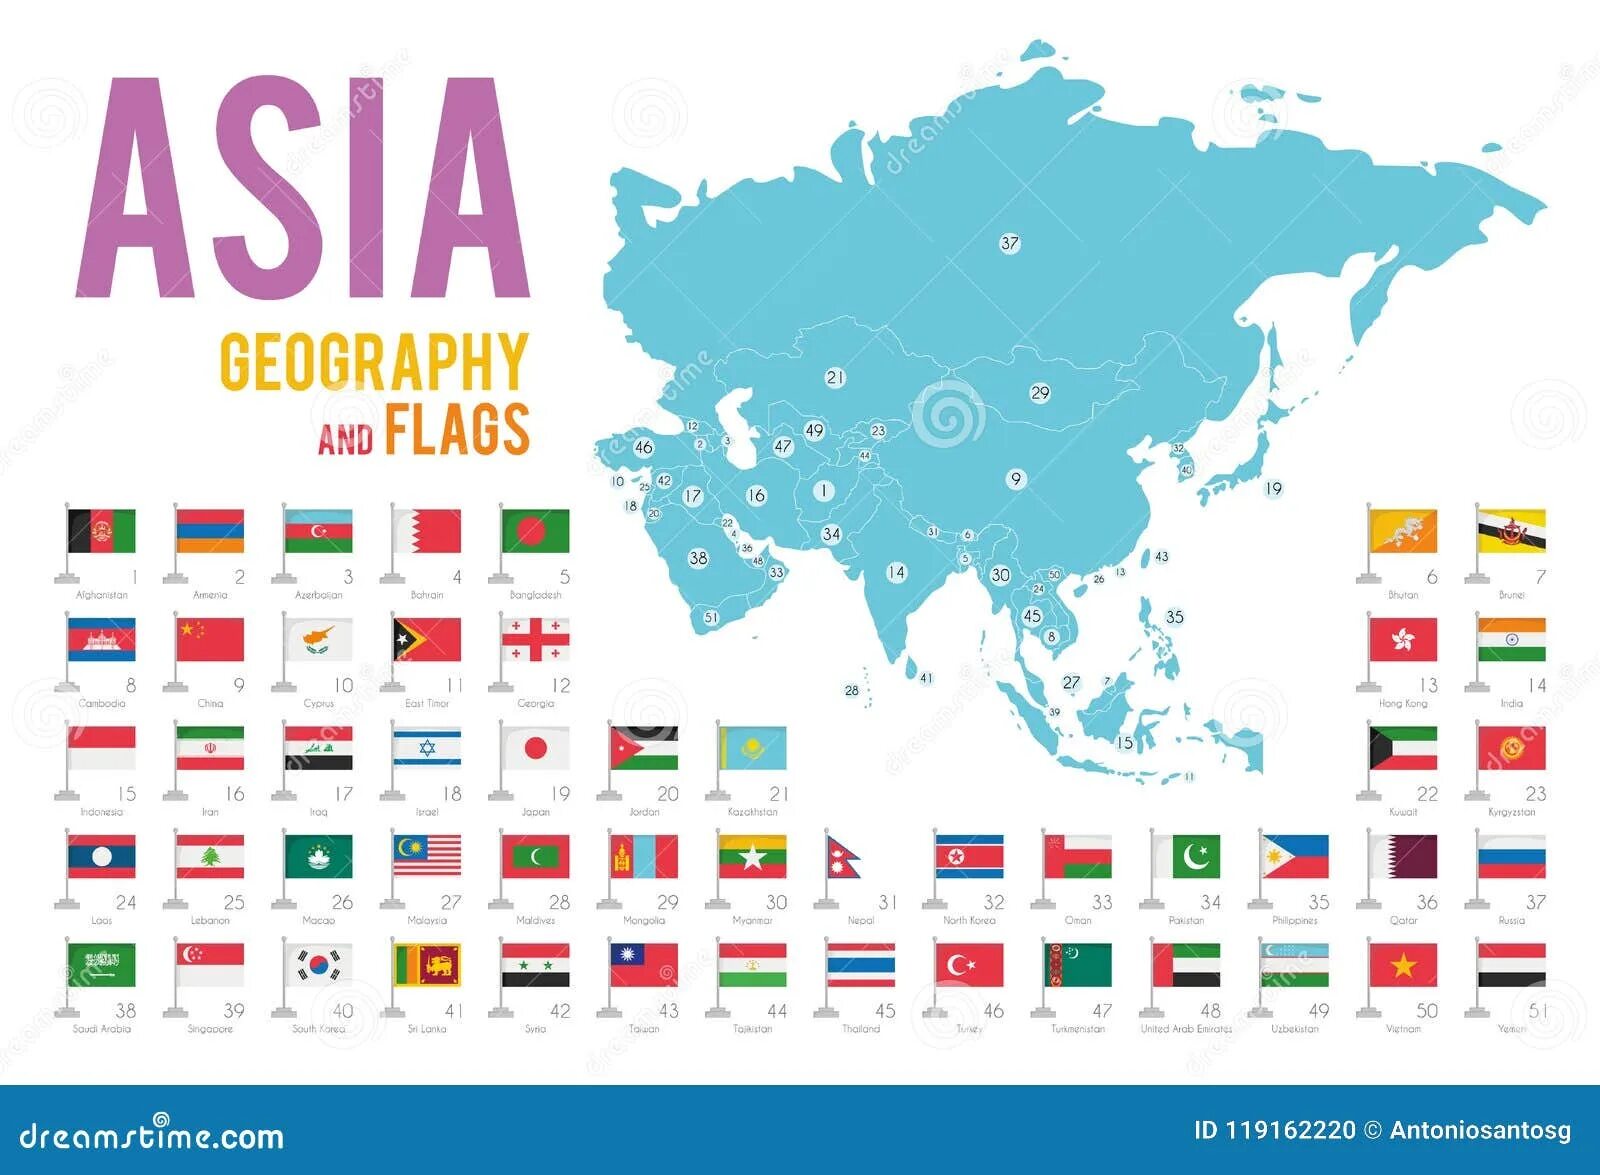 Asia ge. Карта Евразии с флагами стран. Флаг Азии. Карта Азии с флагами. Флаги стран Азии.